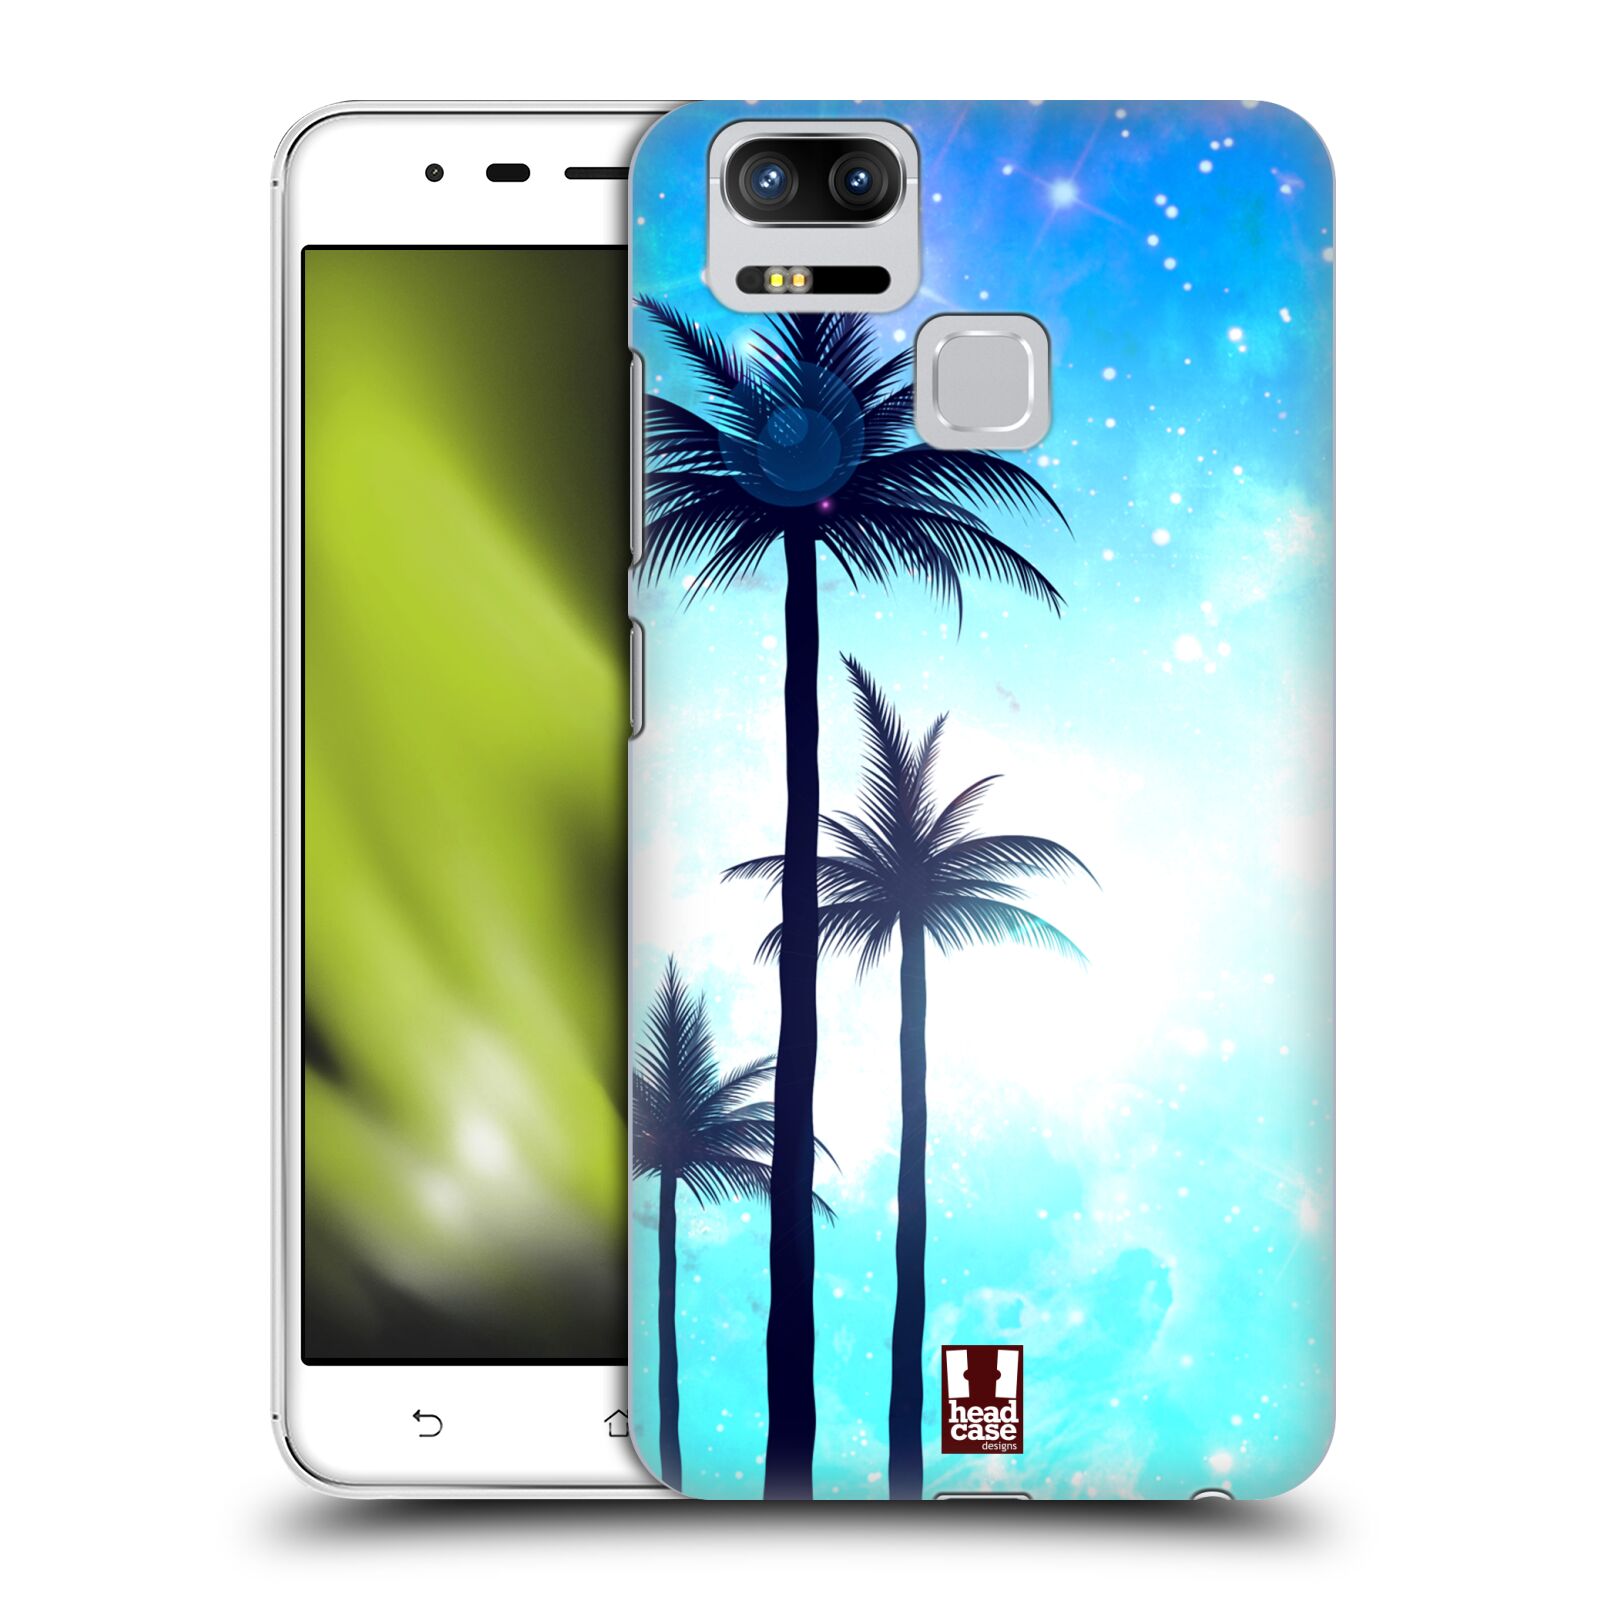 HEAD CASE plastový obal na mobil Asus Zenfone 3 Zoom ZE553KL vzor Kreslený motiv silueta moře a palmy MODRÁ